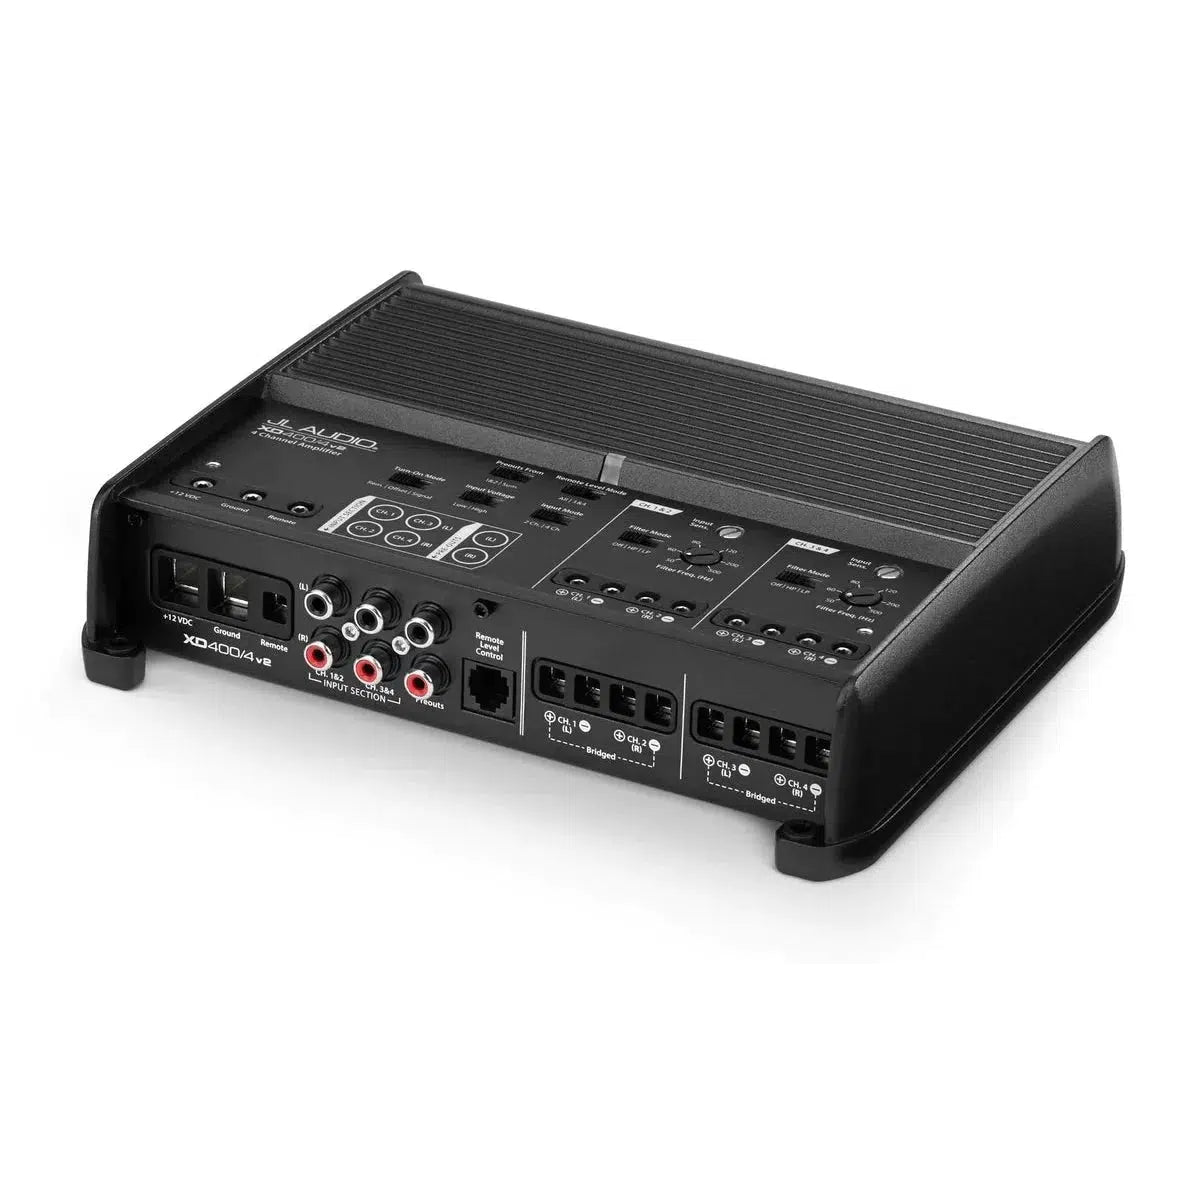 Amplificador de 4 canales JL Audio-XD400/4V2-Masori.de